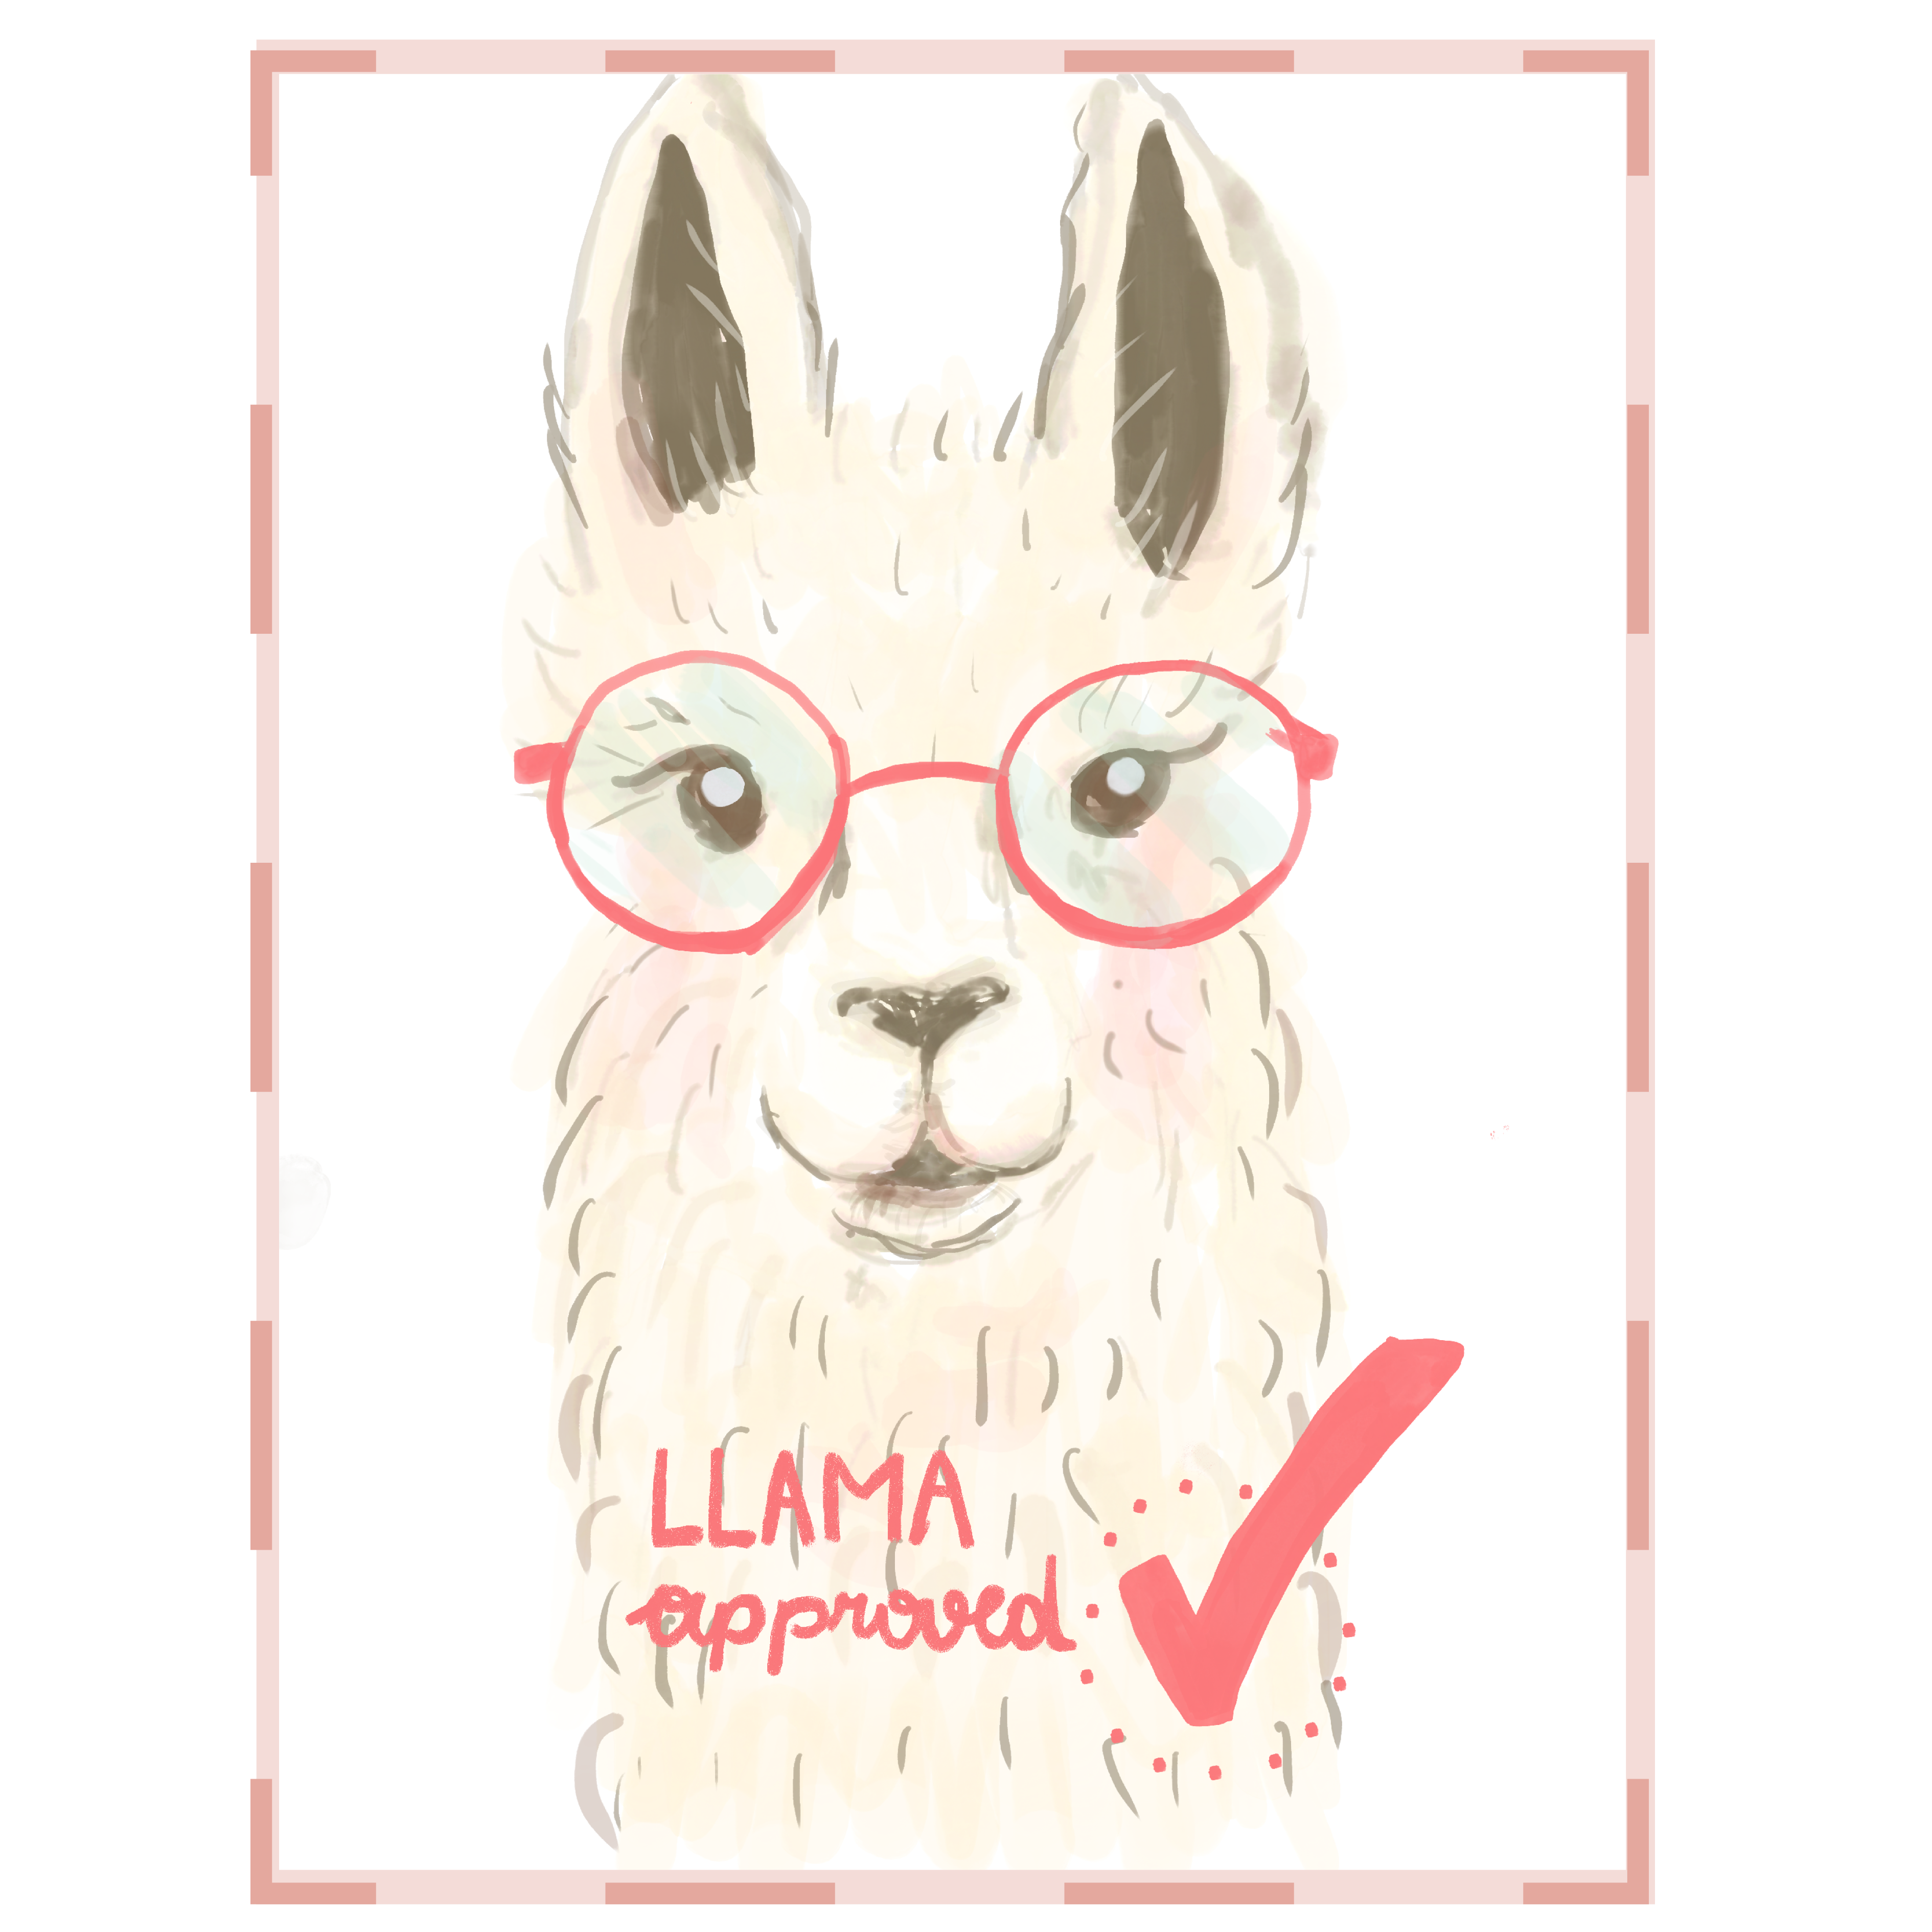 Sticker zum Beitrag: Zeichnung eines Lamas mit der Aufschrift "LLAMA approved"